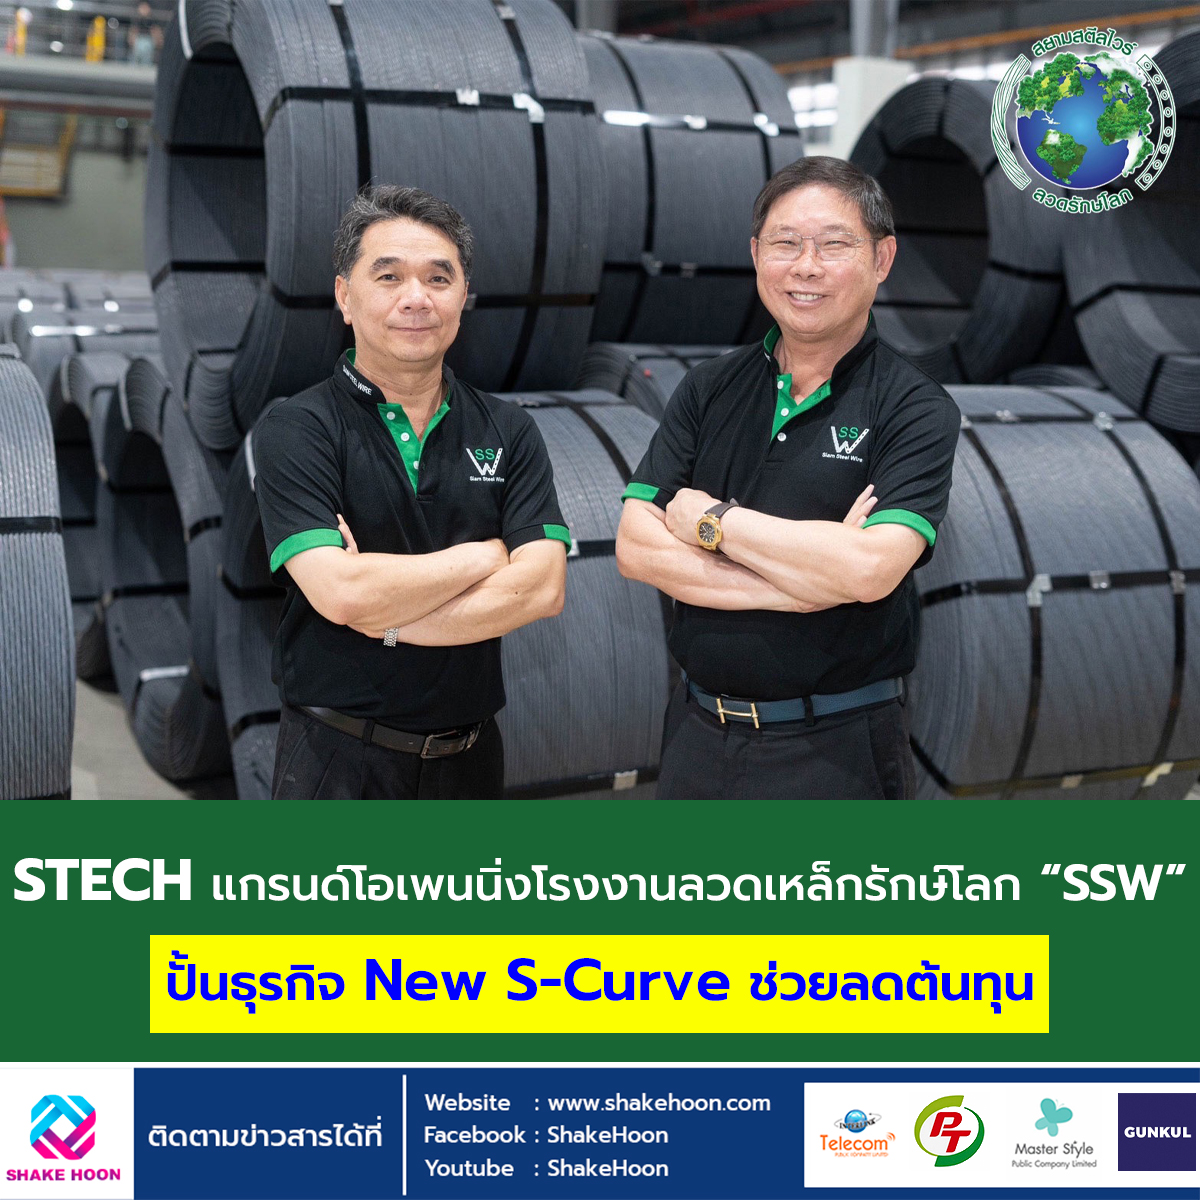 STECH แกรนด์โอเพนนิ่ง โรงงานลวดเหล็กรักษ์โลก “SSW” ปั้นธุรกิจ New S-Curve ช่วยลดต้นทุน